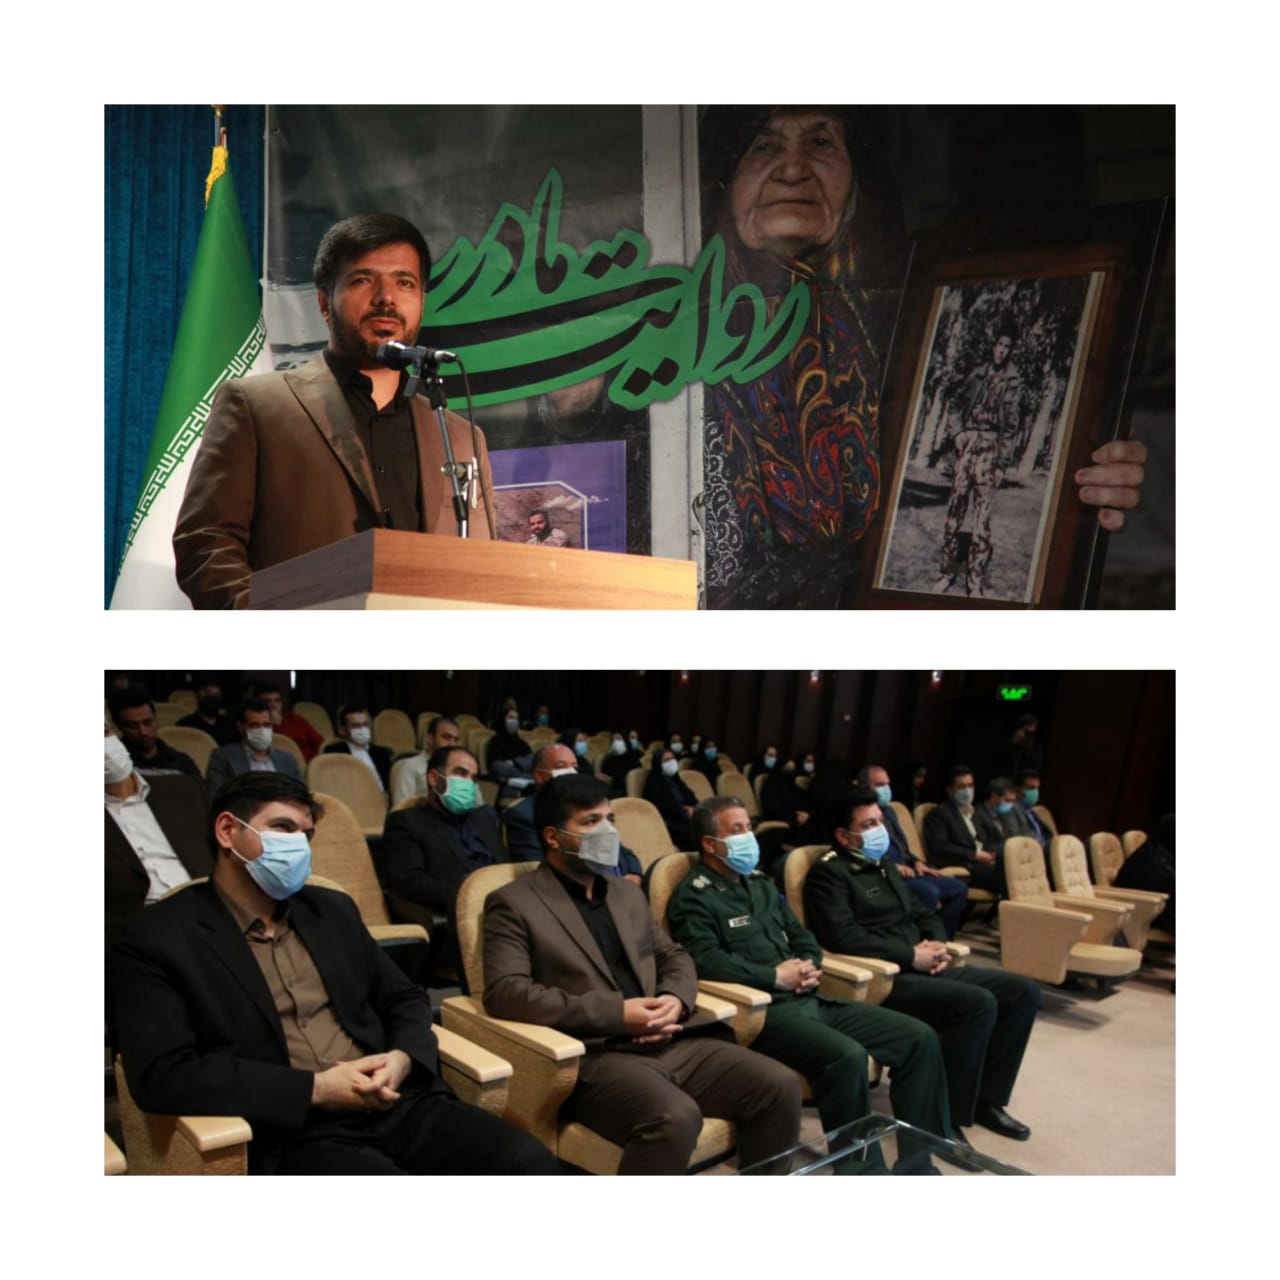 فرهنگ ایثار و شهادت در کردستان باید ترویج داده شود